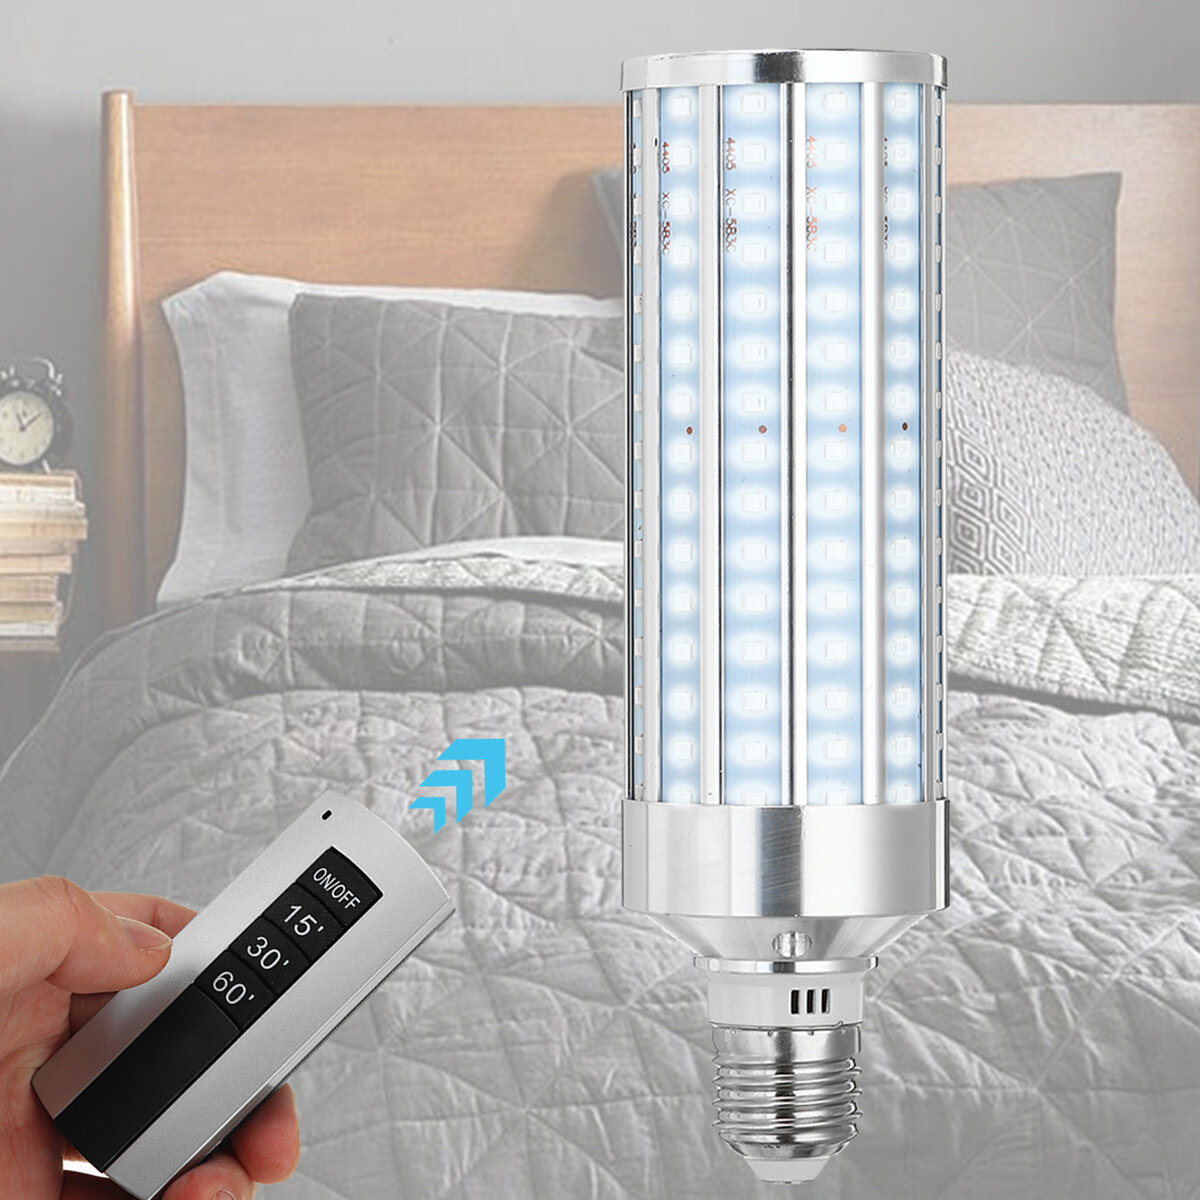 AC85-265V 38W UV Kiemdodende lamp E27 Desinfectie LED-lamp + lamphouder met schakelaar + afstandsbed